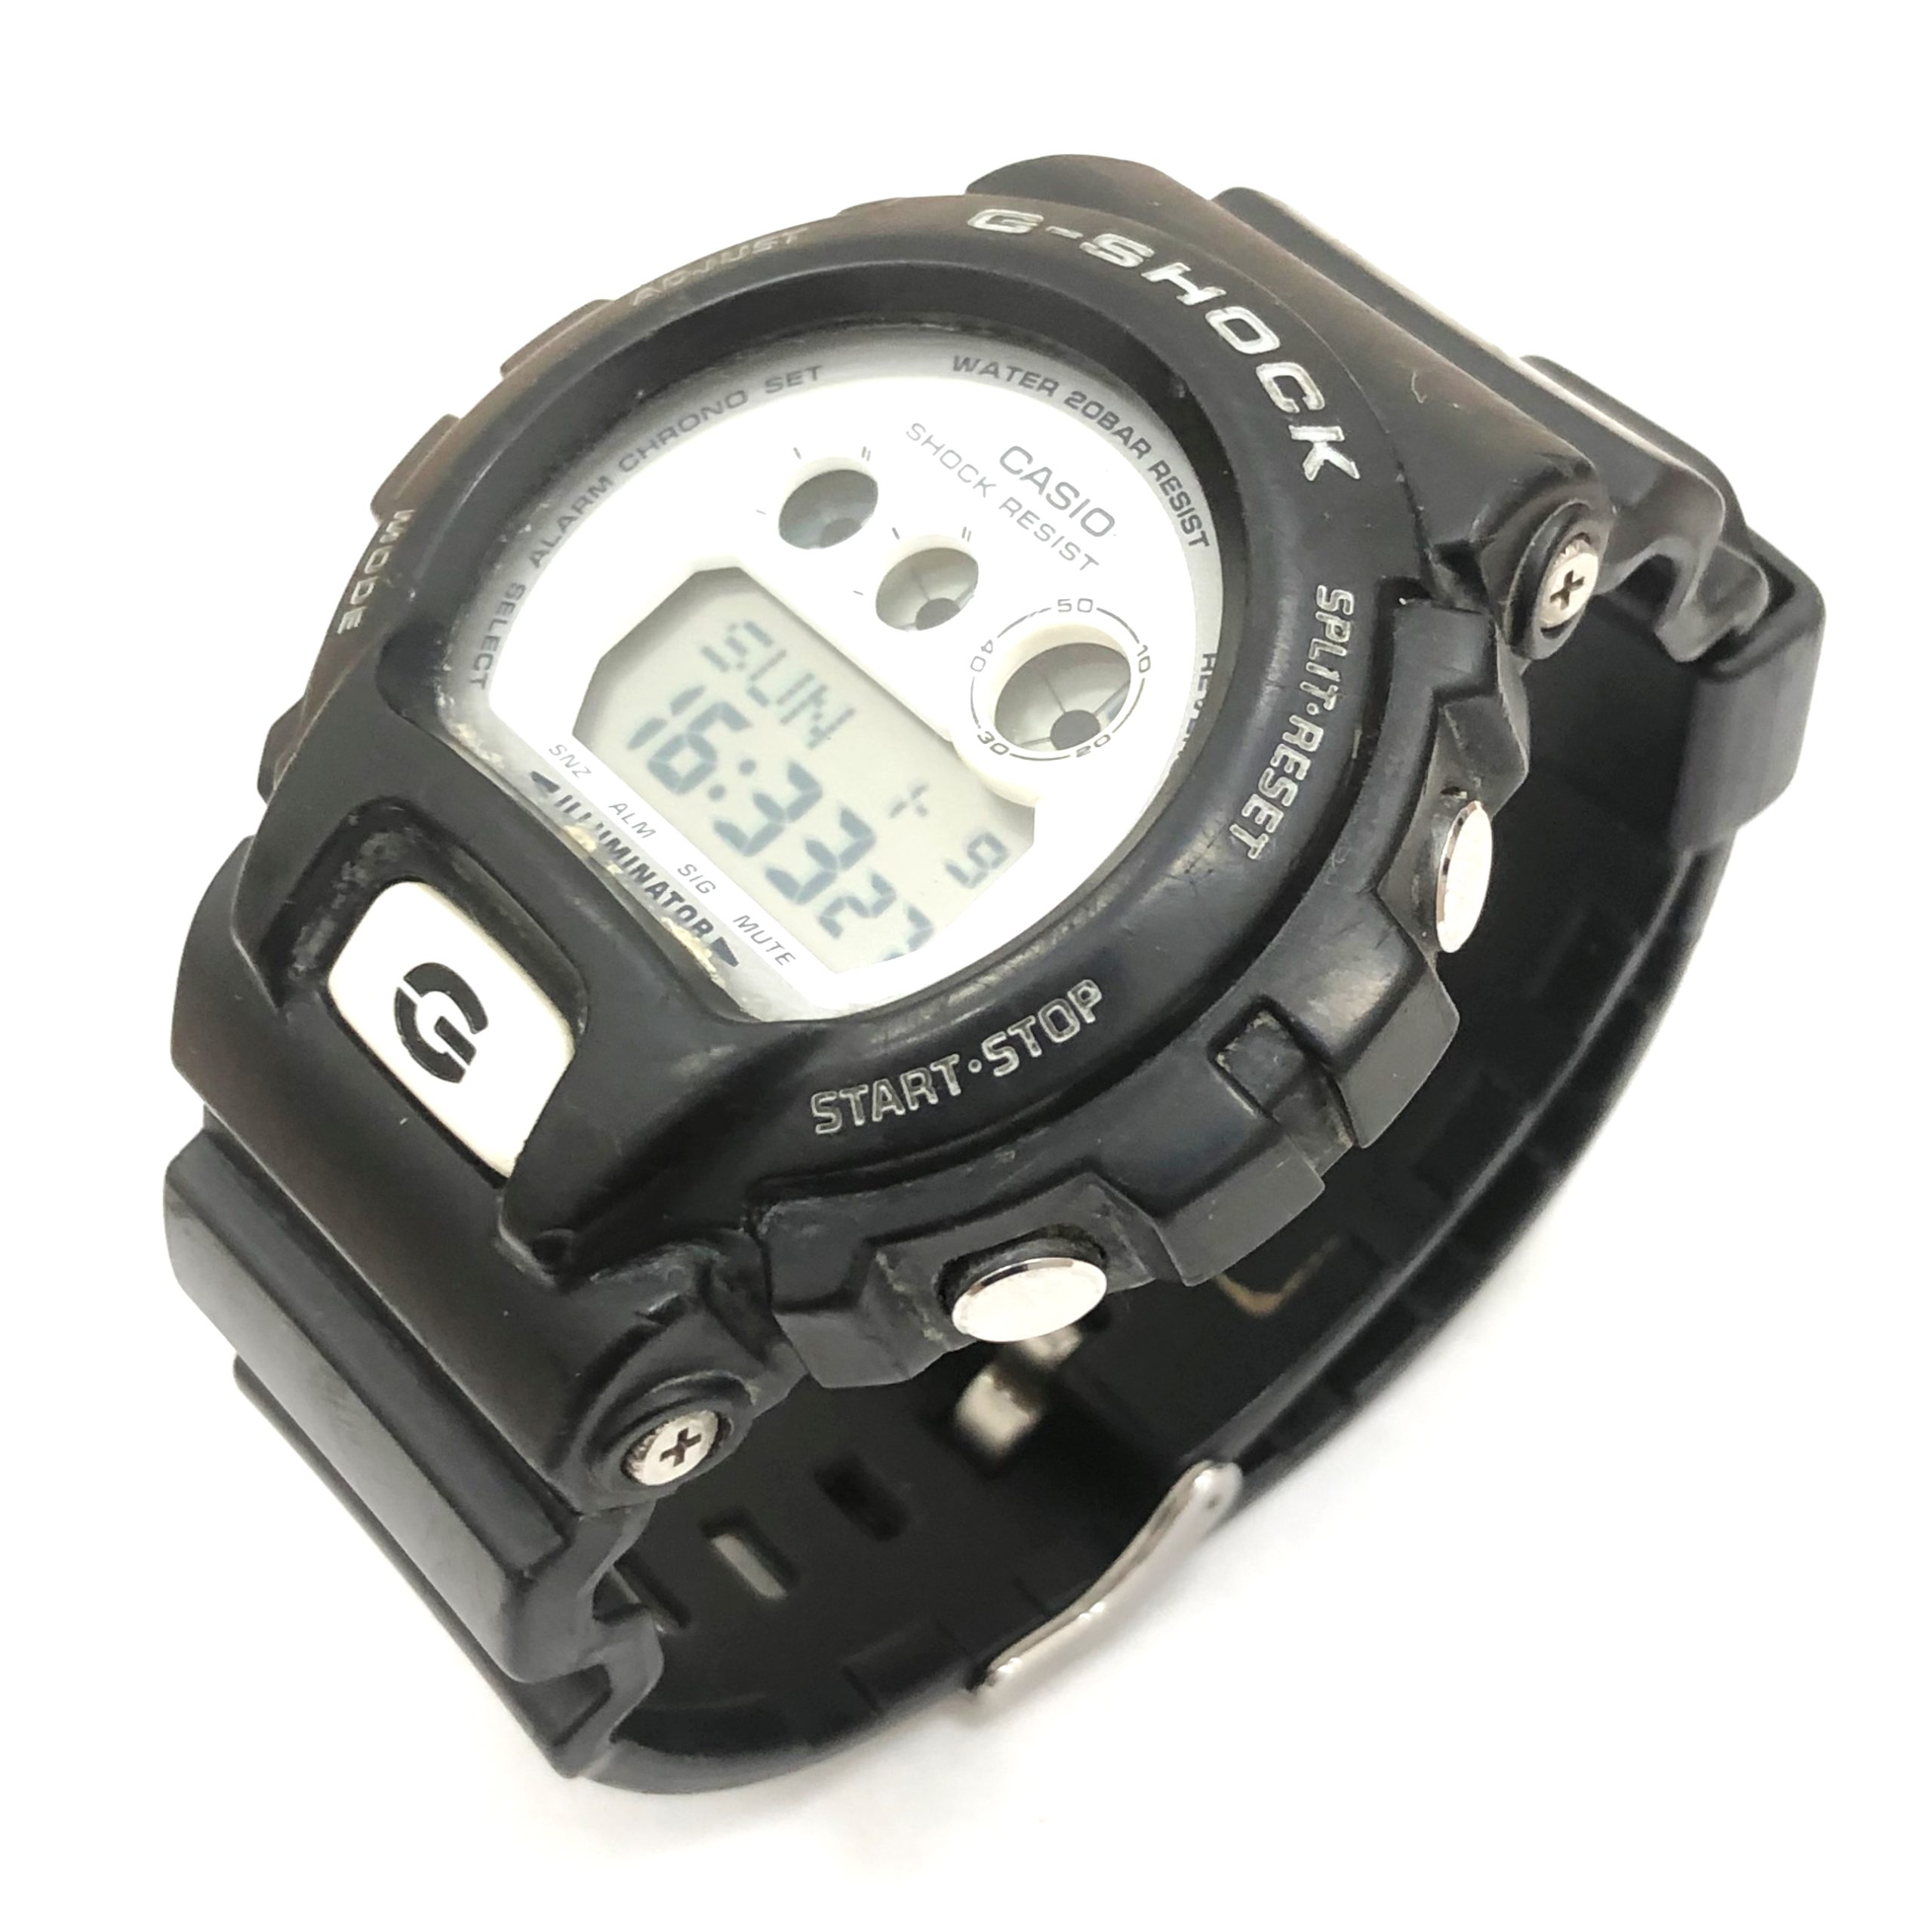 【CASIO G-SHOCK/カシオ Gショック】GD-X6900 デジタル 腕時計